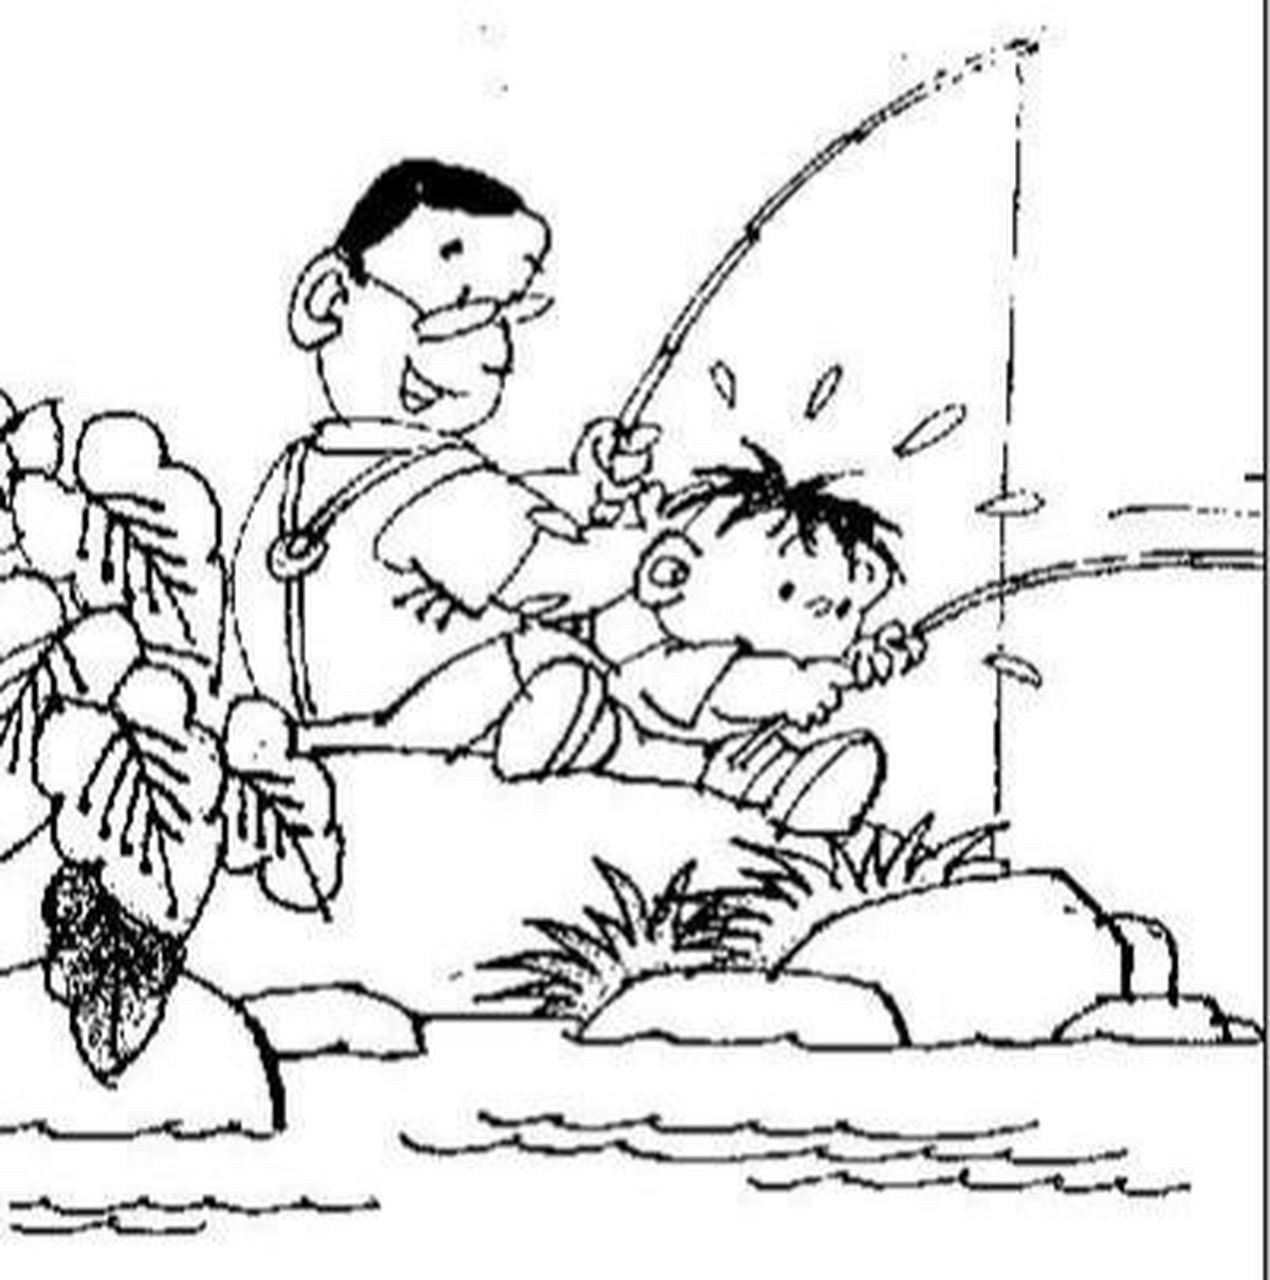 看图写话 小明钓鱼 9999一个晴朗的星期日,小明和爸爸一起去钓鱼